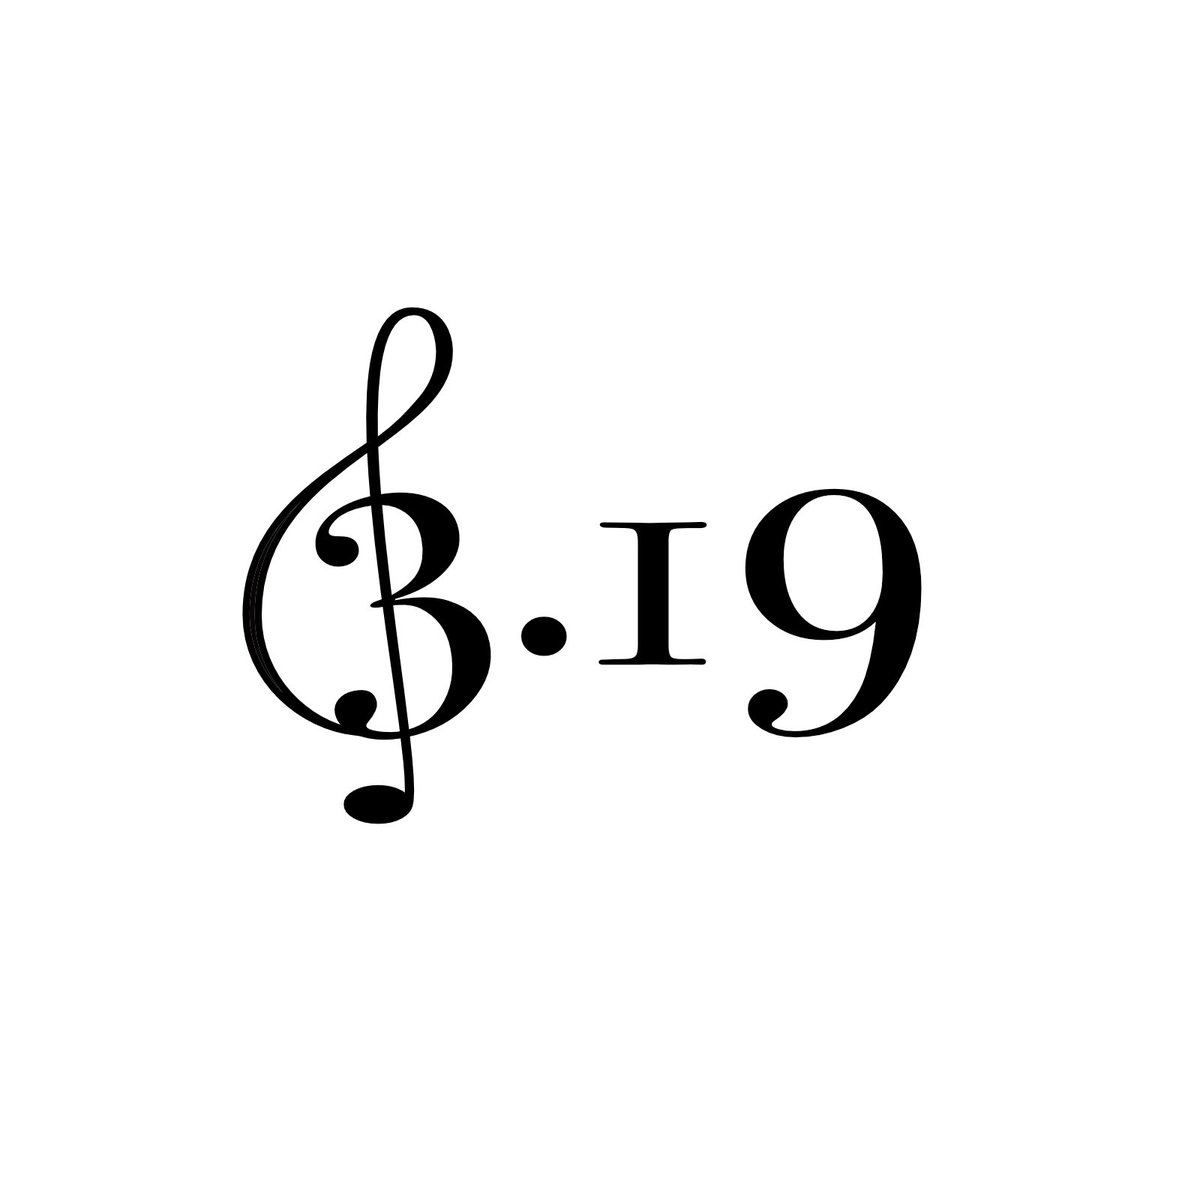 毎日ロゴ（34/100）

今日3月18日は「ミュージックの日」です！

お上品で、高さが綺麗に色々な感じが
音符っぽいと思いました。

「Bodoni 72 Oldstyle」です。横に伸ばしています。